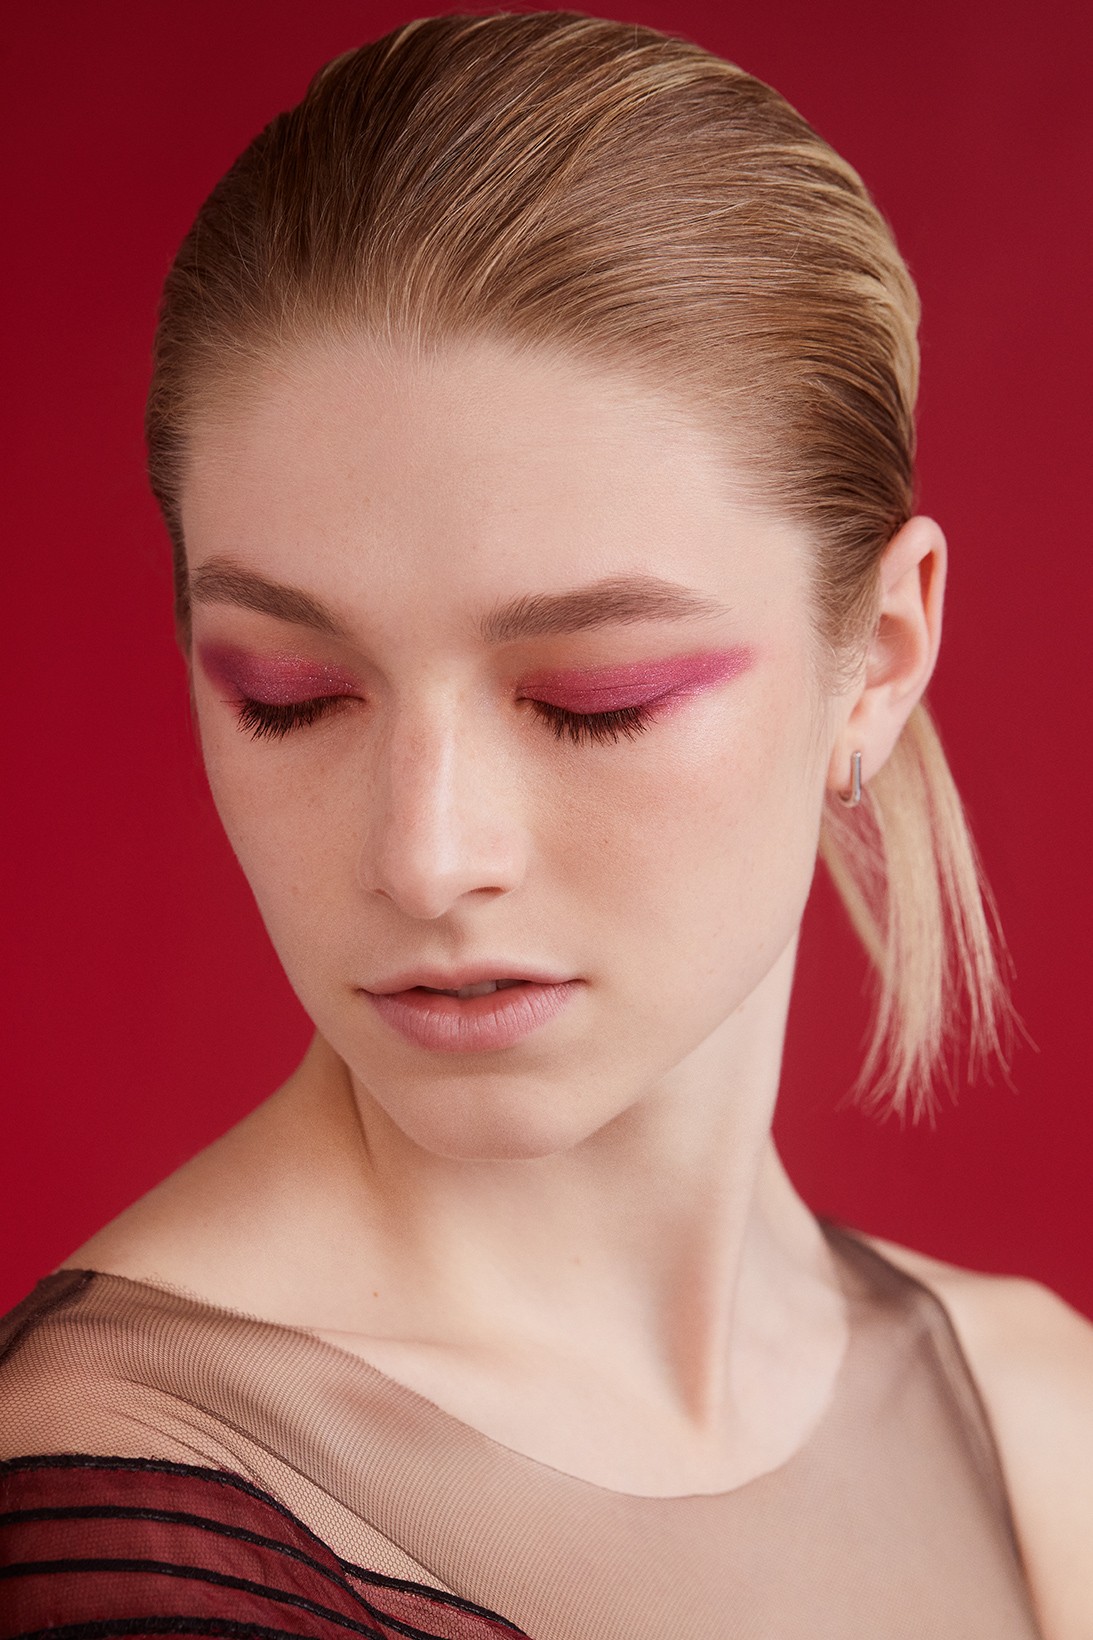 Хантер Шафер снялась в кампании новой коллекции Shiseido для макияжа глаз (фото 3)